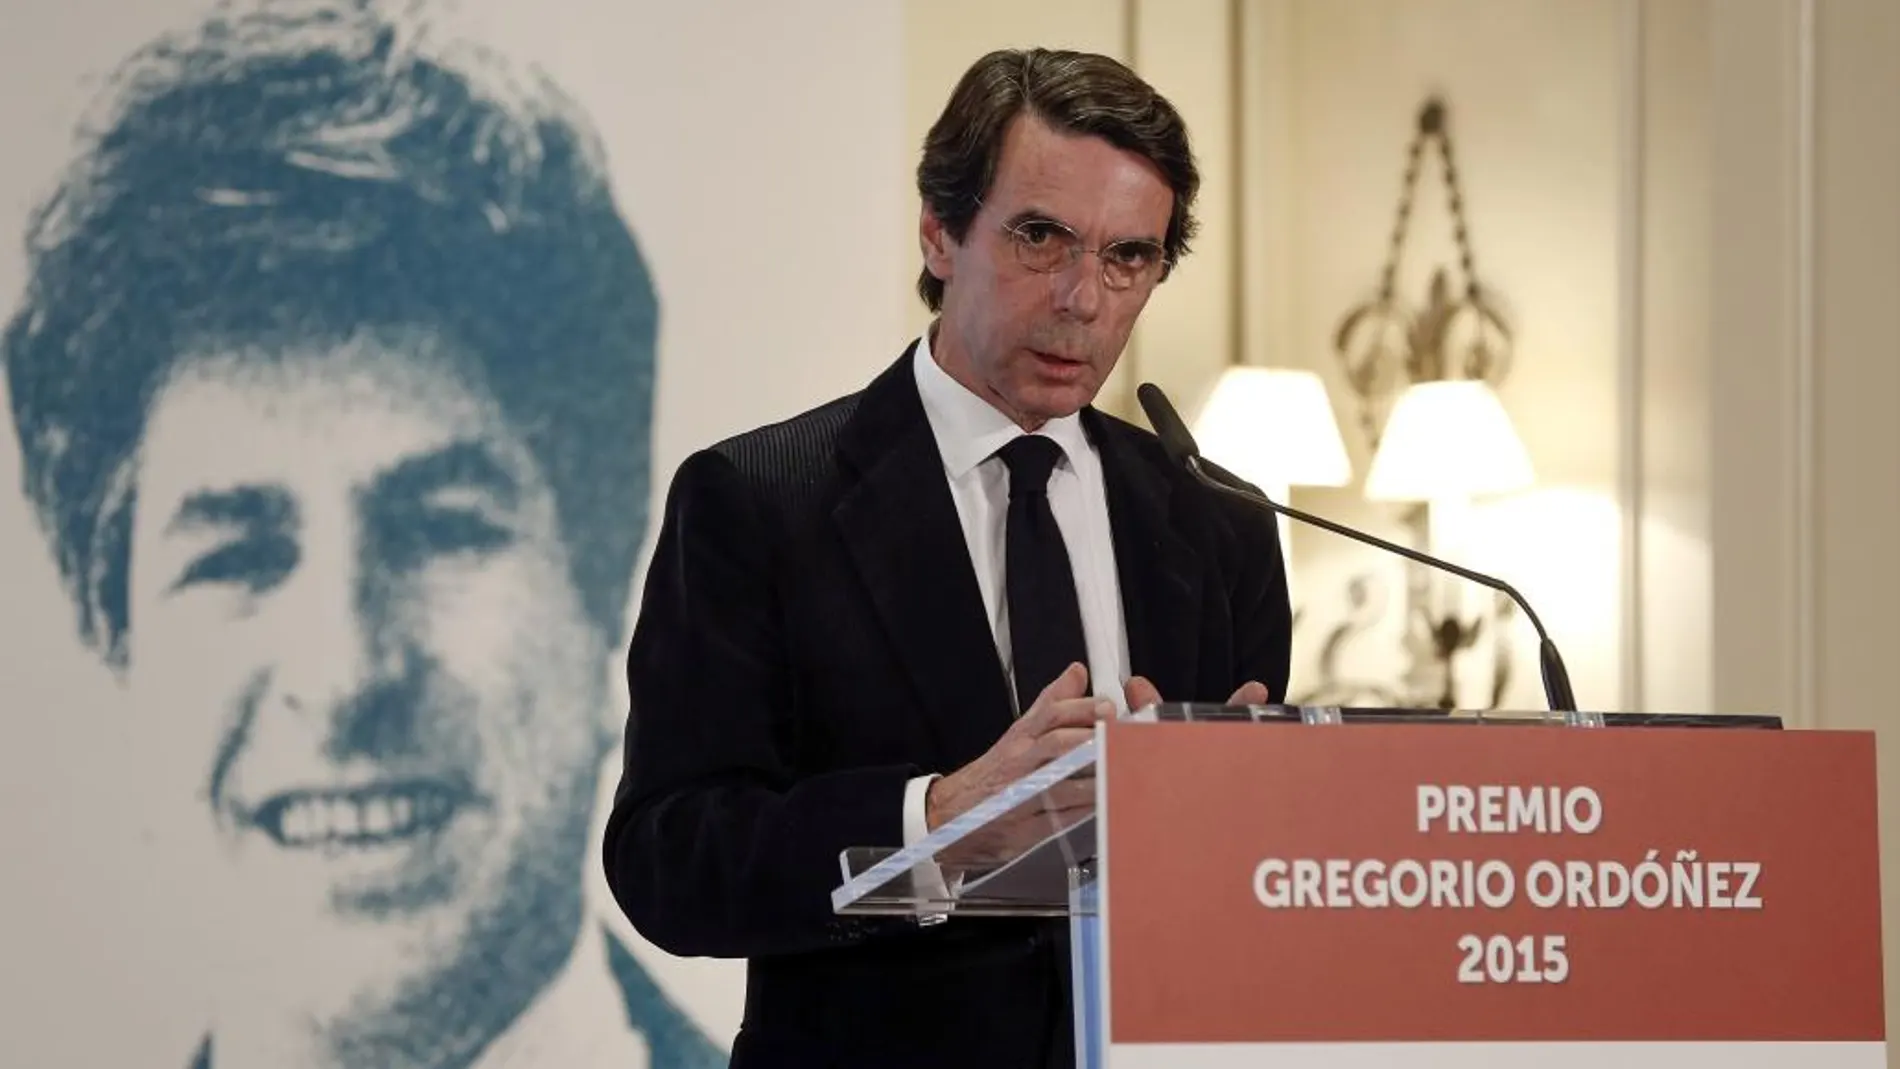 El expresidente del Gobierno José María Aznar ha presidido hoy en San Sebastián el acto de entrega del Premio Gregorio Ordóñez al opositor venezolano Leopoldo López.